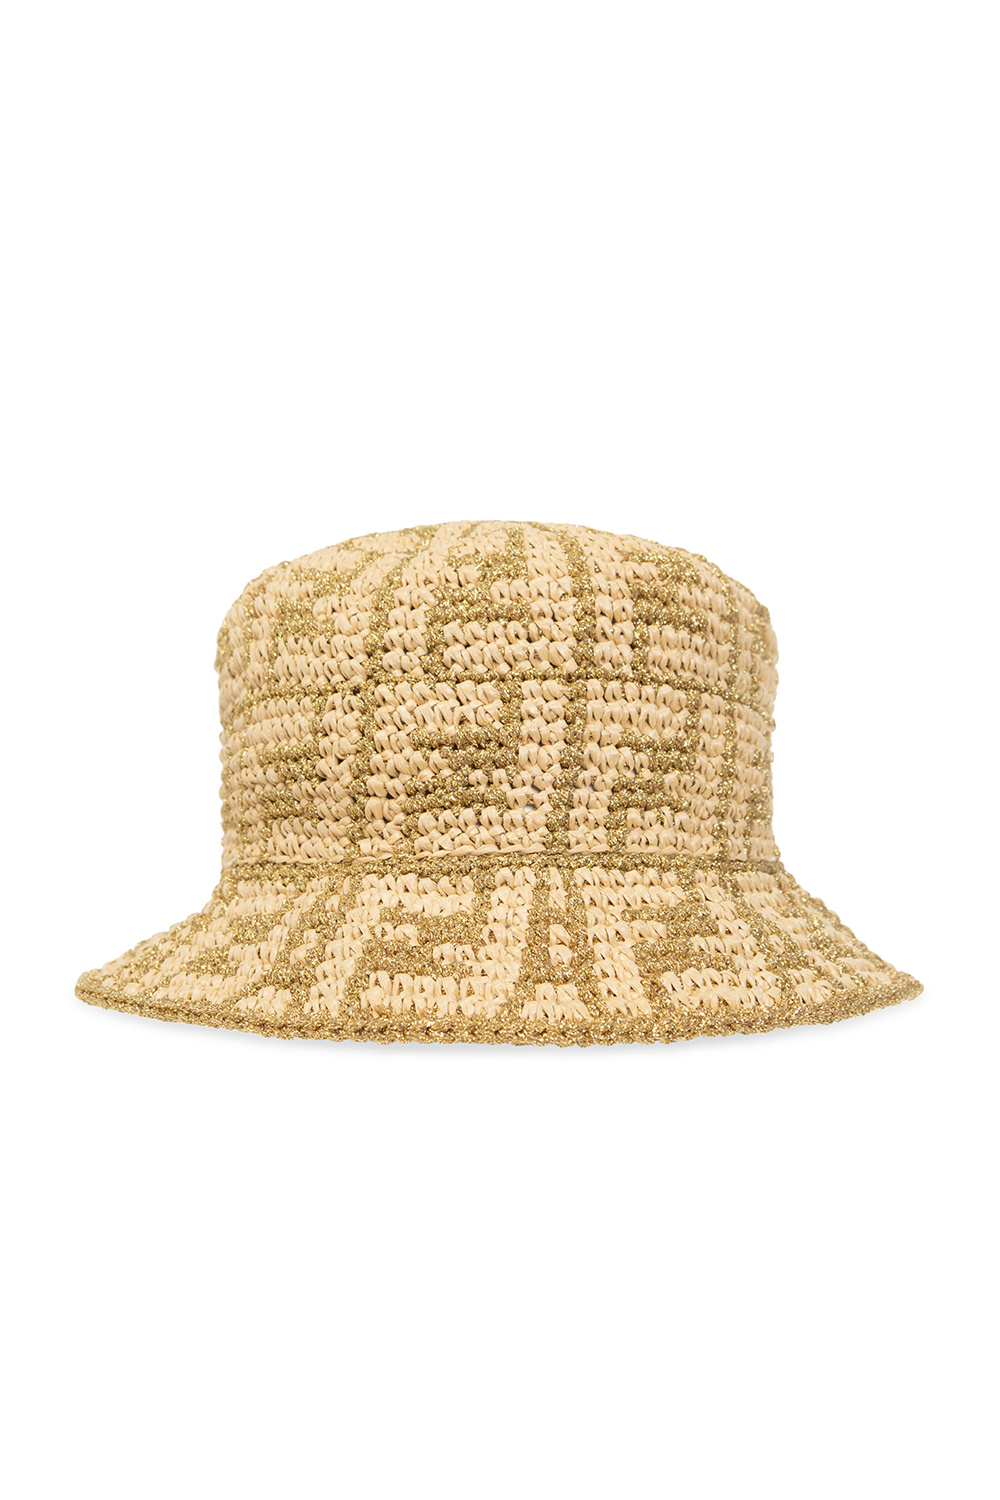 Fendi Patterned bucket hat